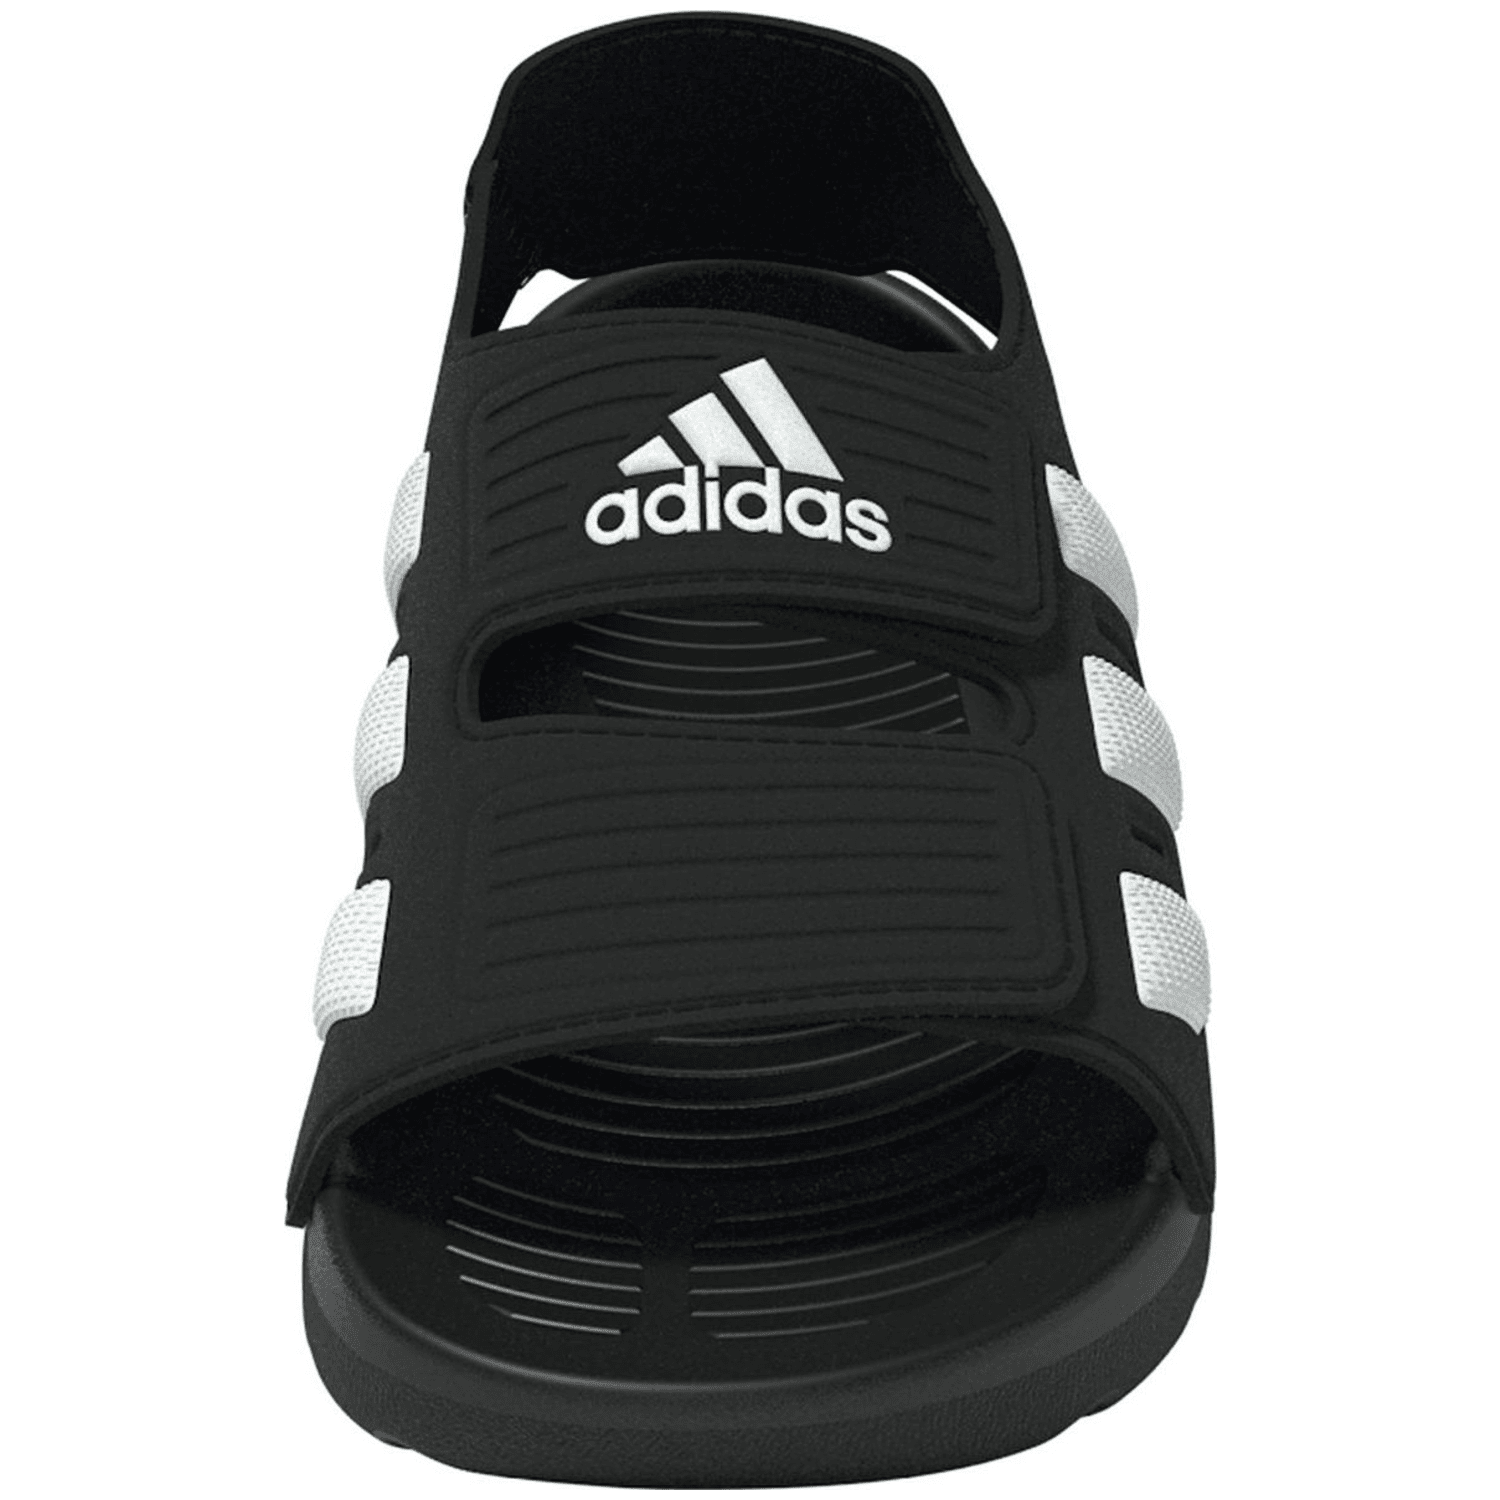 Adidas Altaswim 2.0 Kids Sandale Kinder